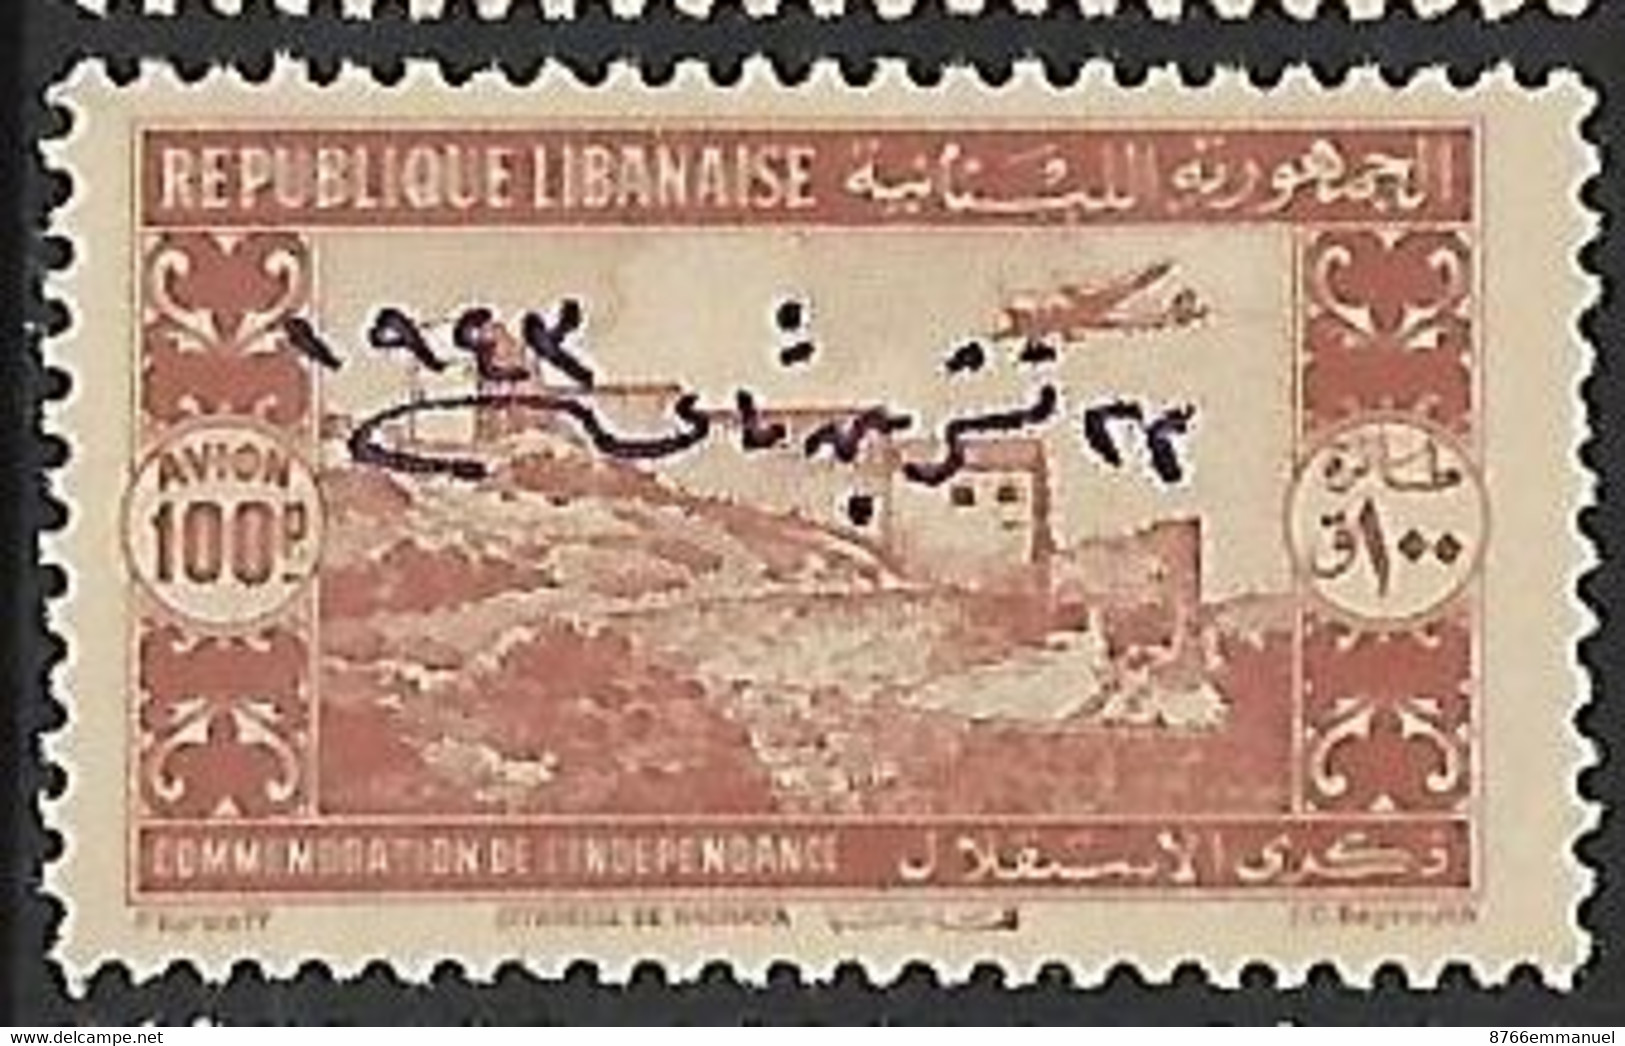 GRAND LIBAN AERIEN N°93 N* - Luftpost